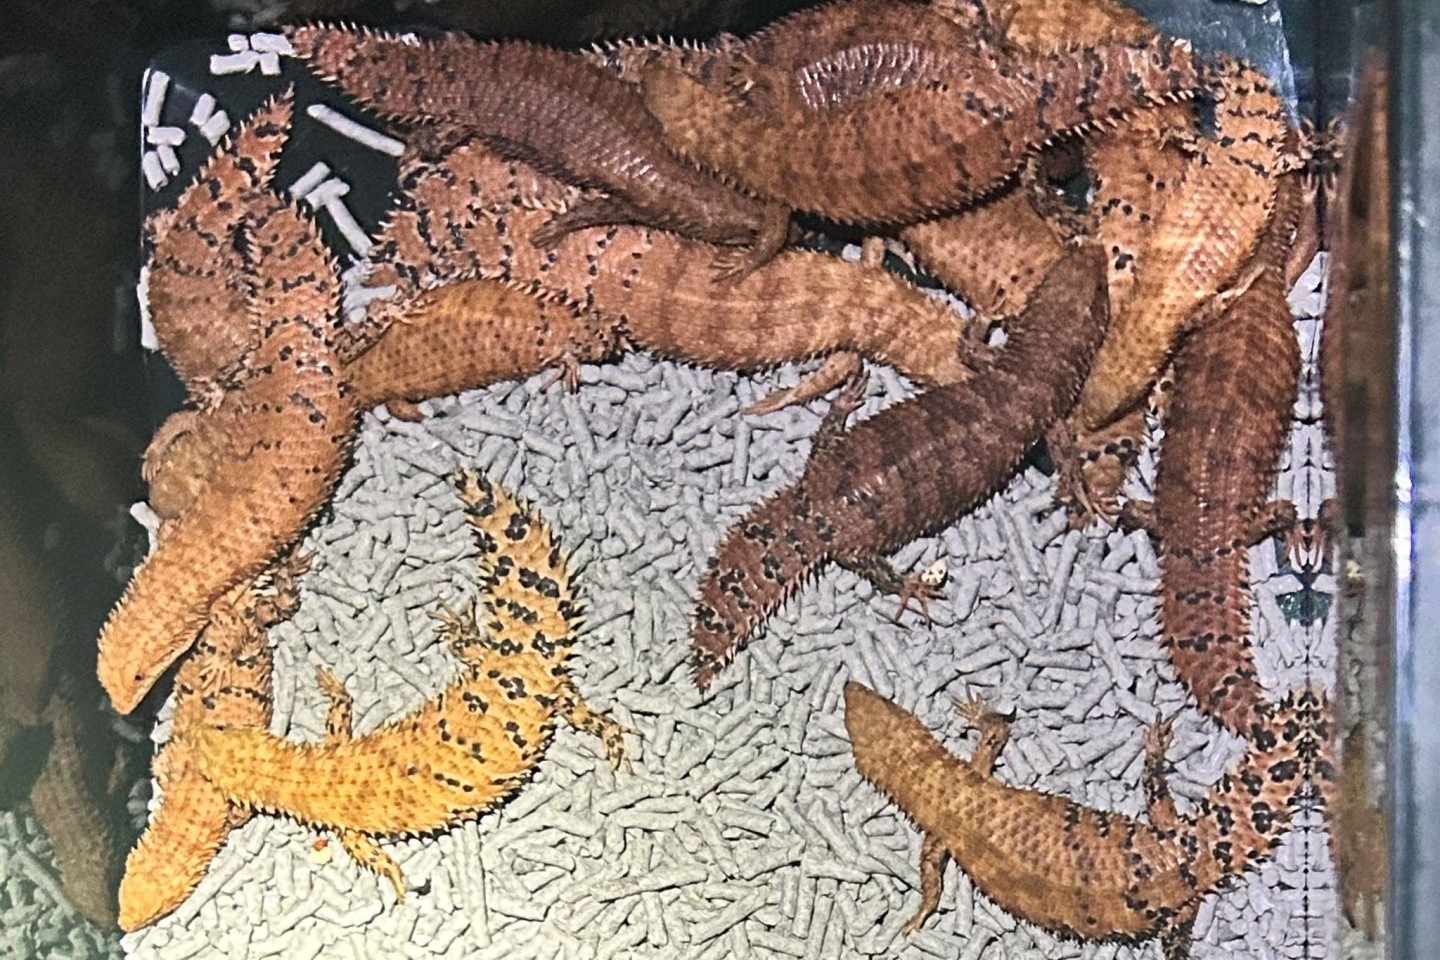 Australische Reptilien wurden von der Polizei beschlagnahmt.